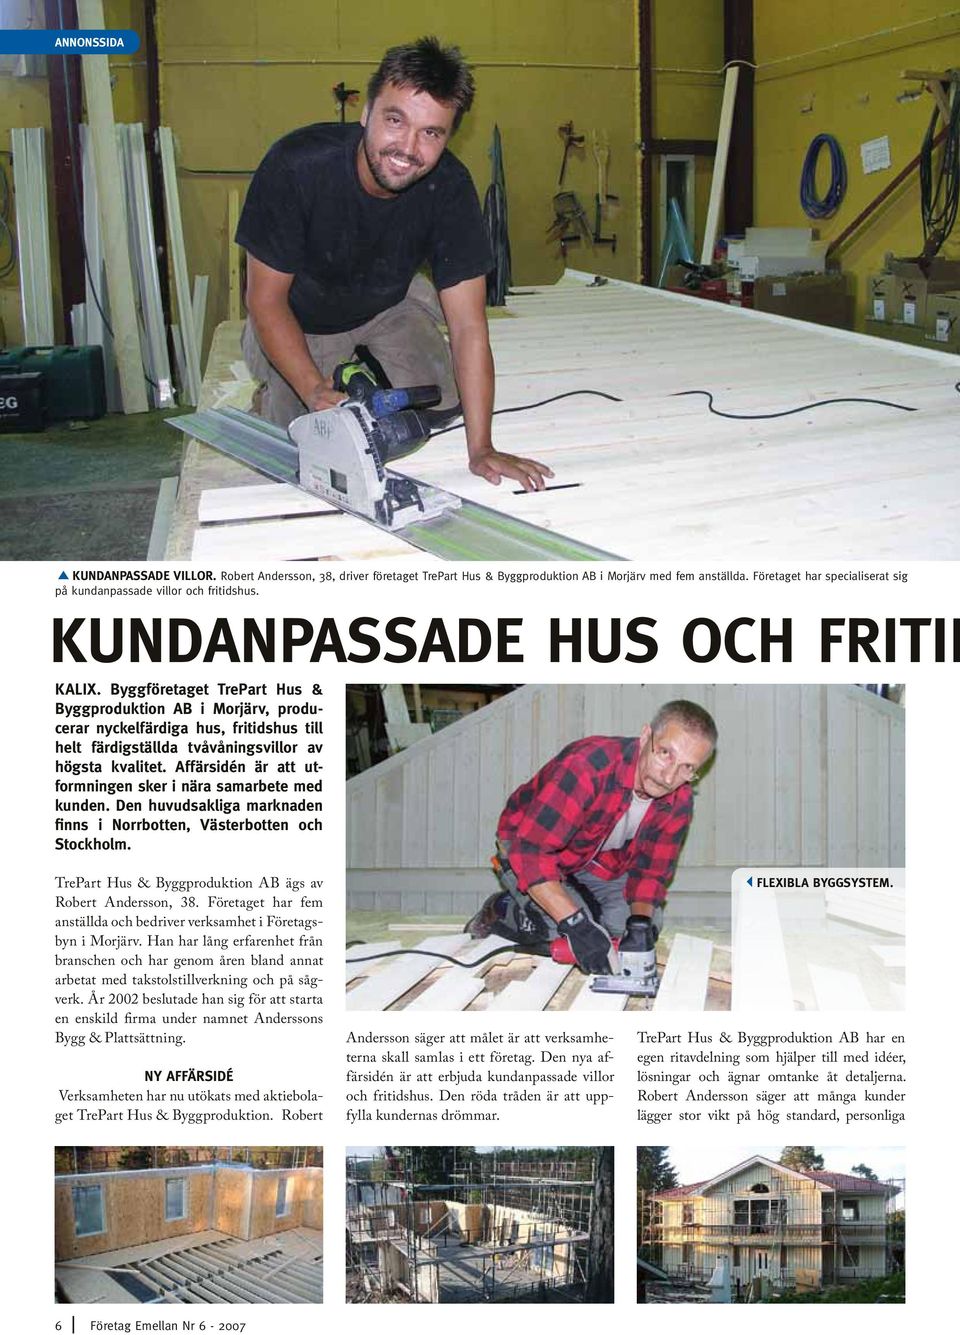 Affärsidén är att utformningen sker i nära samarbete med kunden. Den huvudsakliga marknaden finns i Norrbotten, Västerbotten och Stockholm. TrePart Hus & Byggproduktion AB ägs av Robert Andersson, 38.